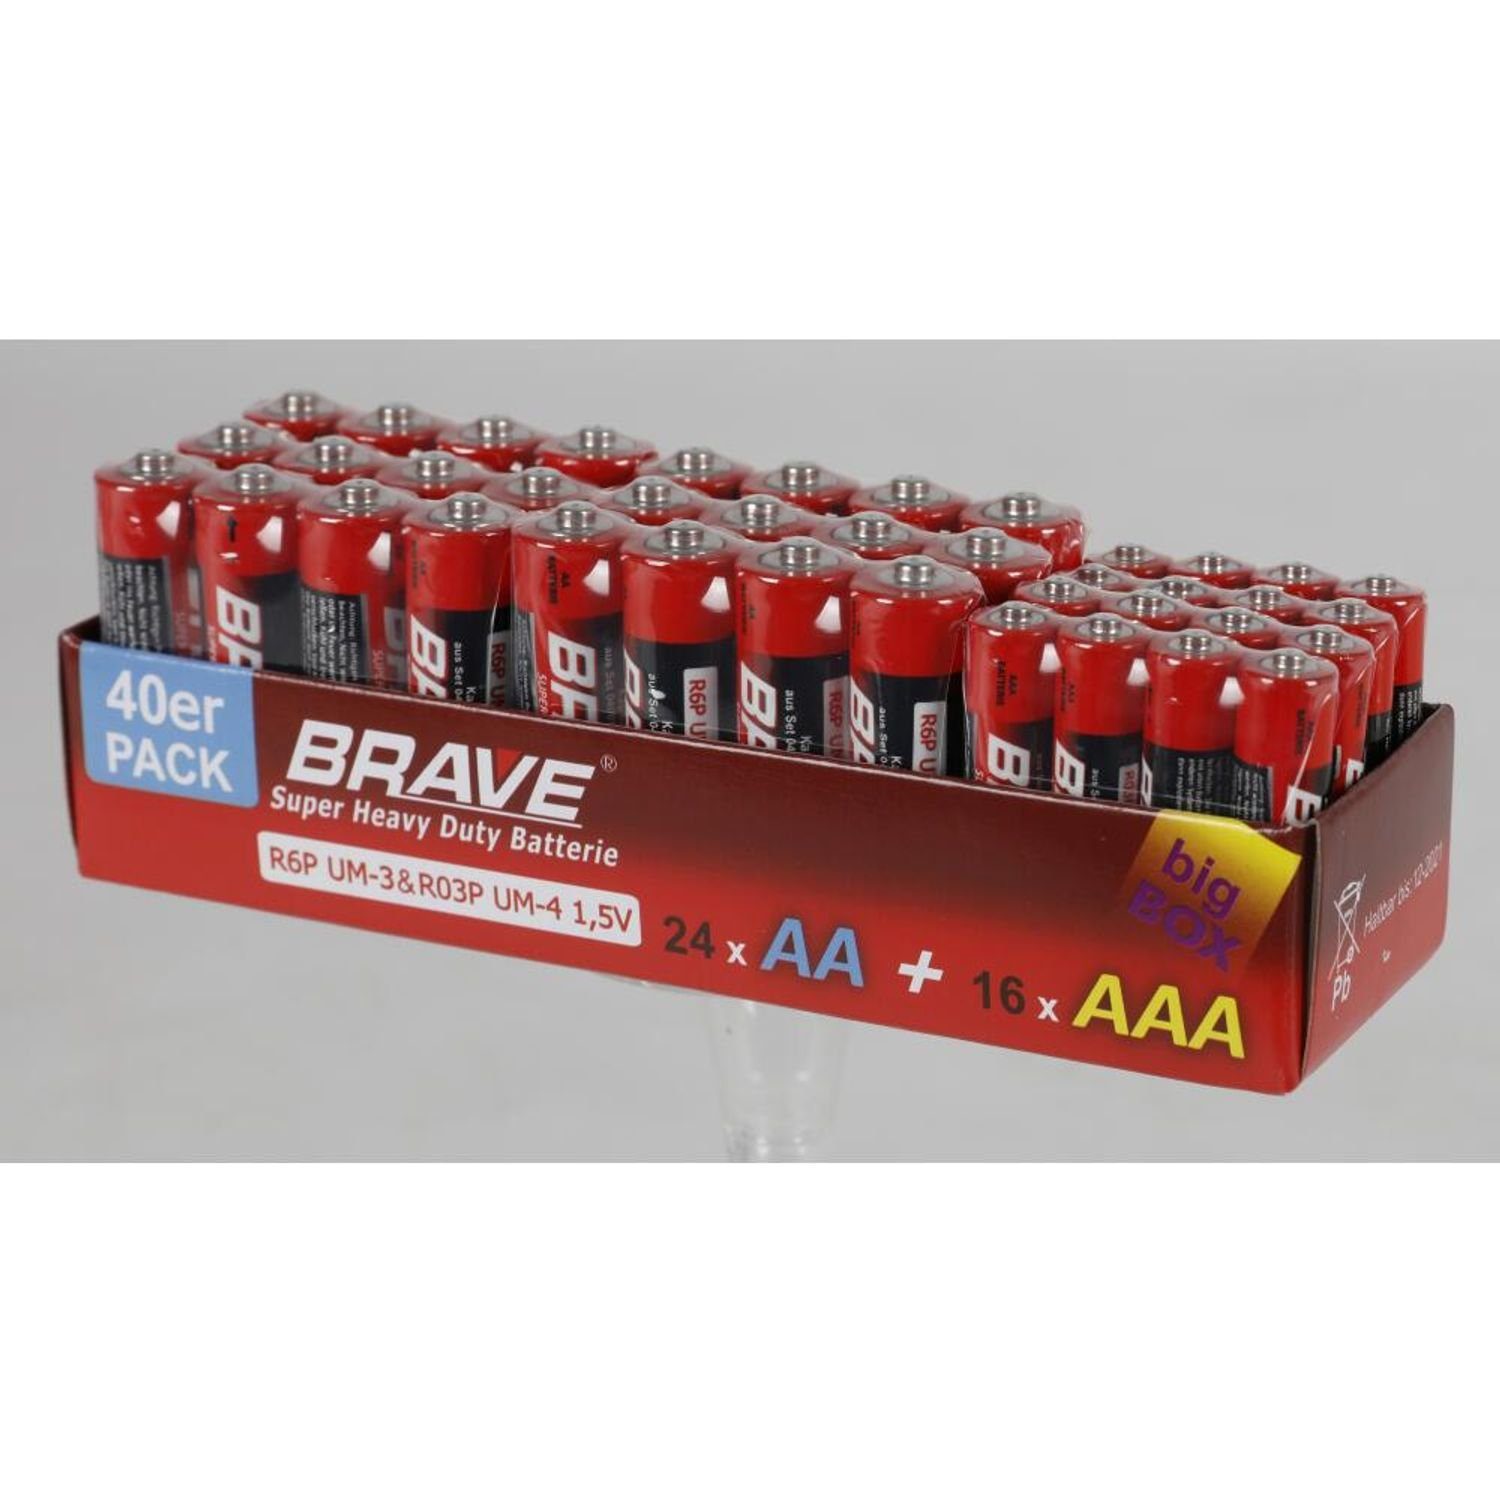 BURI 24x 40er-Pack Brave Batterien AA & AAA Großpackung 960 Stück Batterie, (960 St) | Batterien